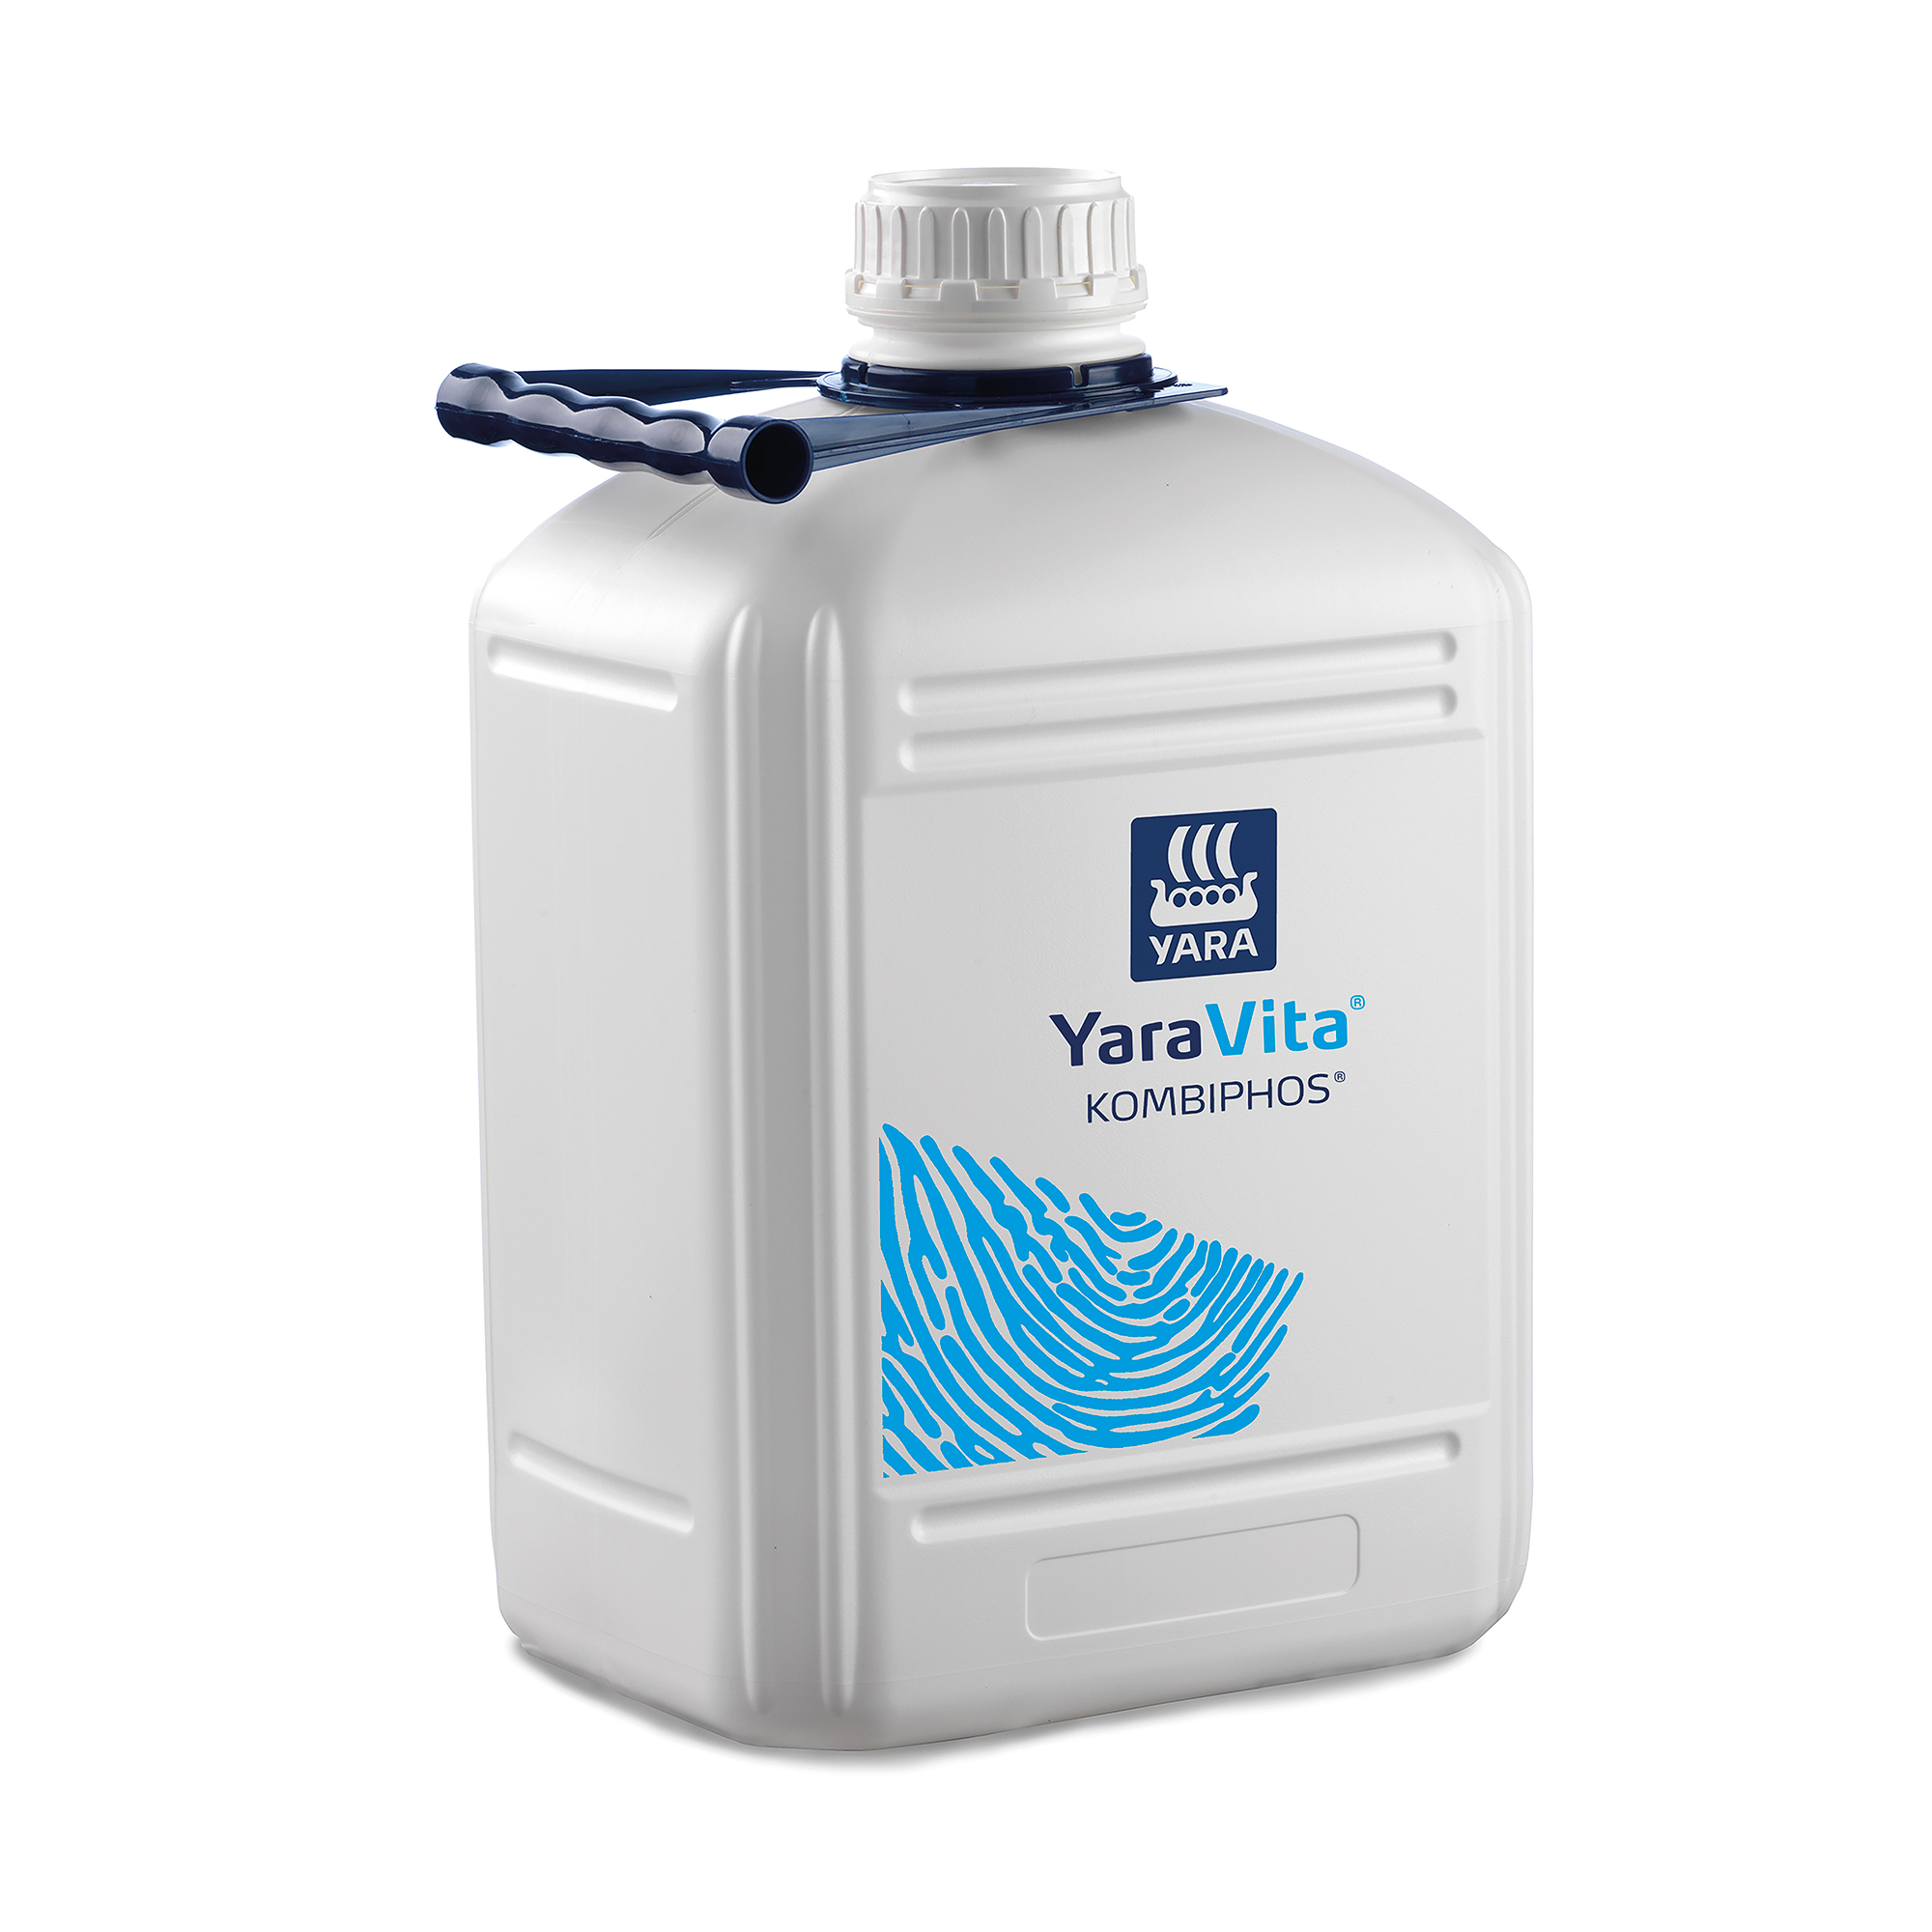 YaraVita® KombiPhos, 10 liter kanister